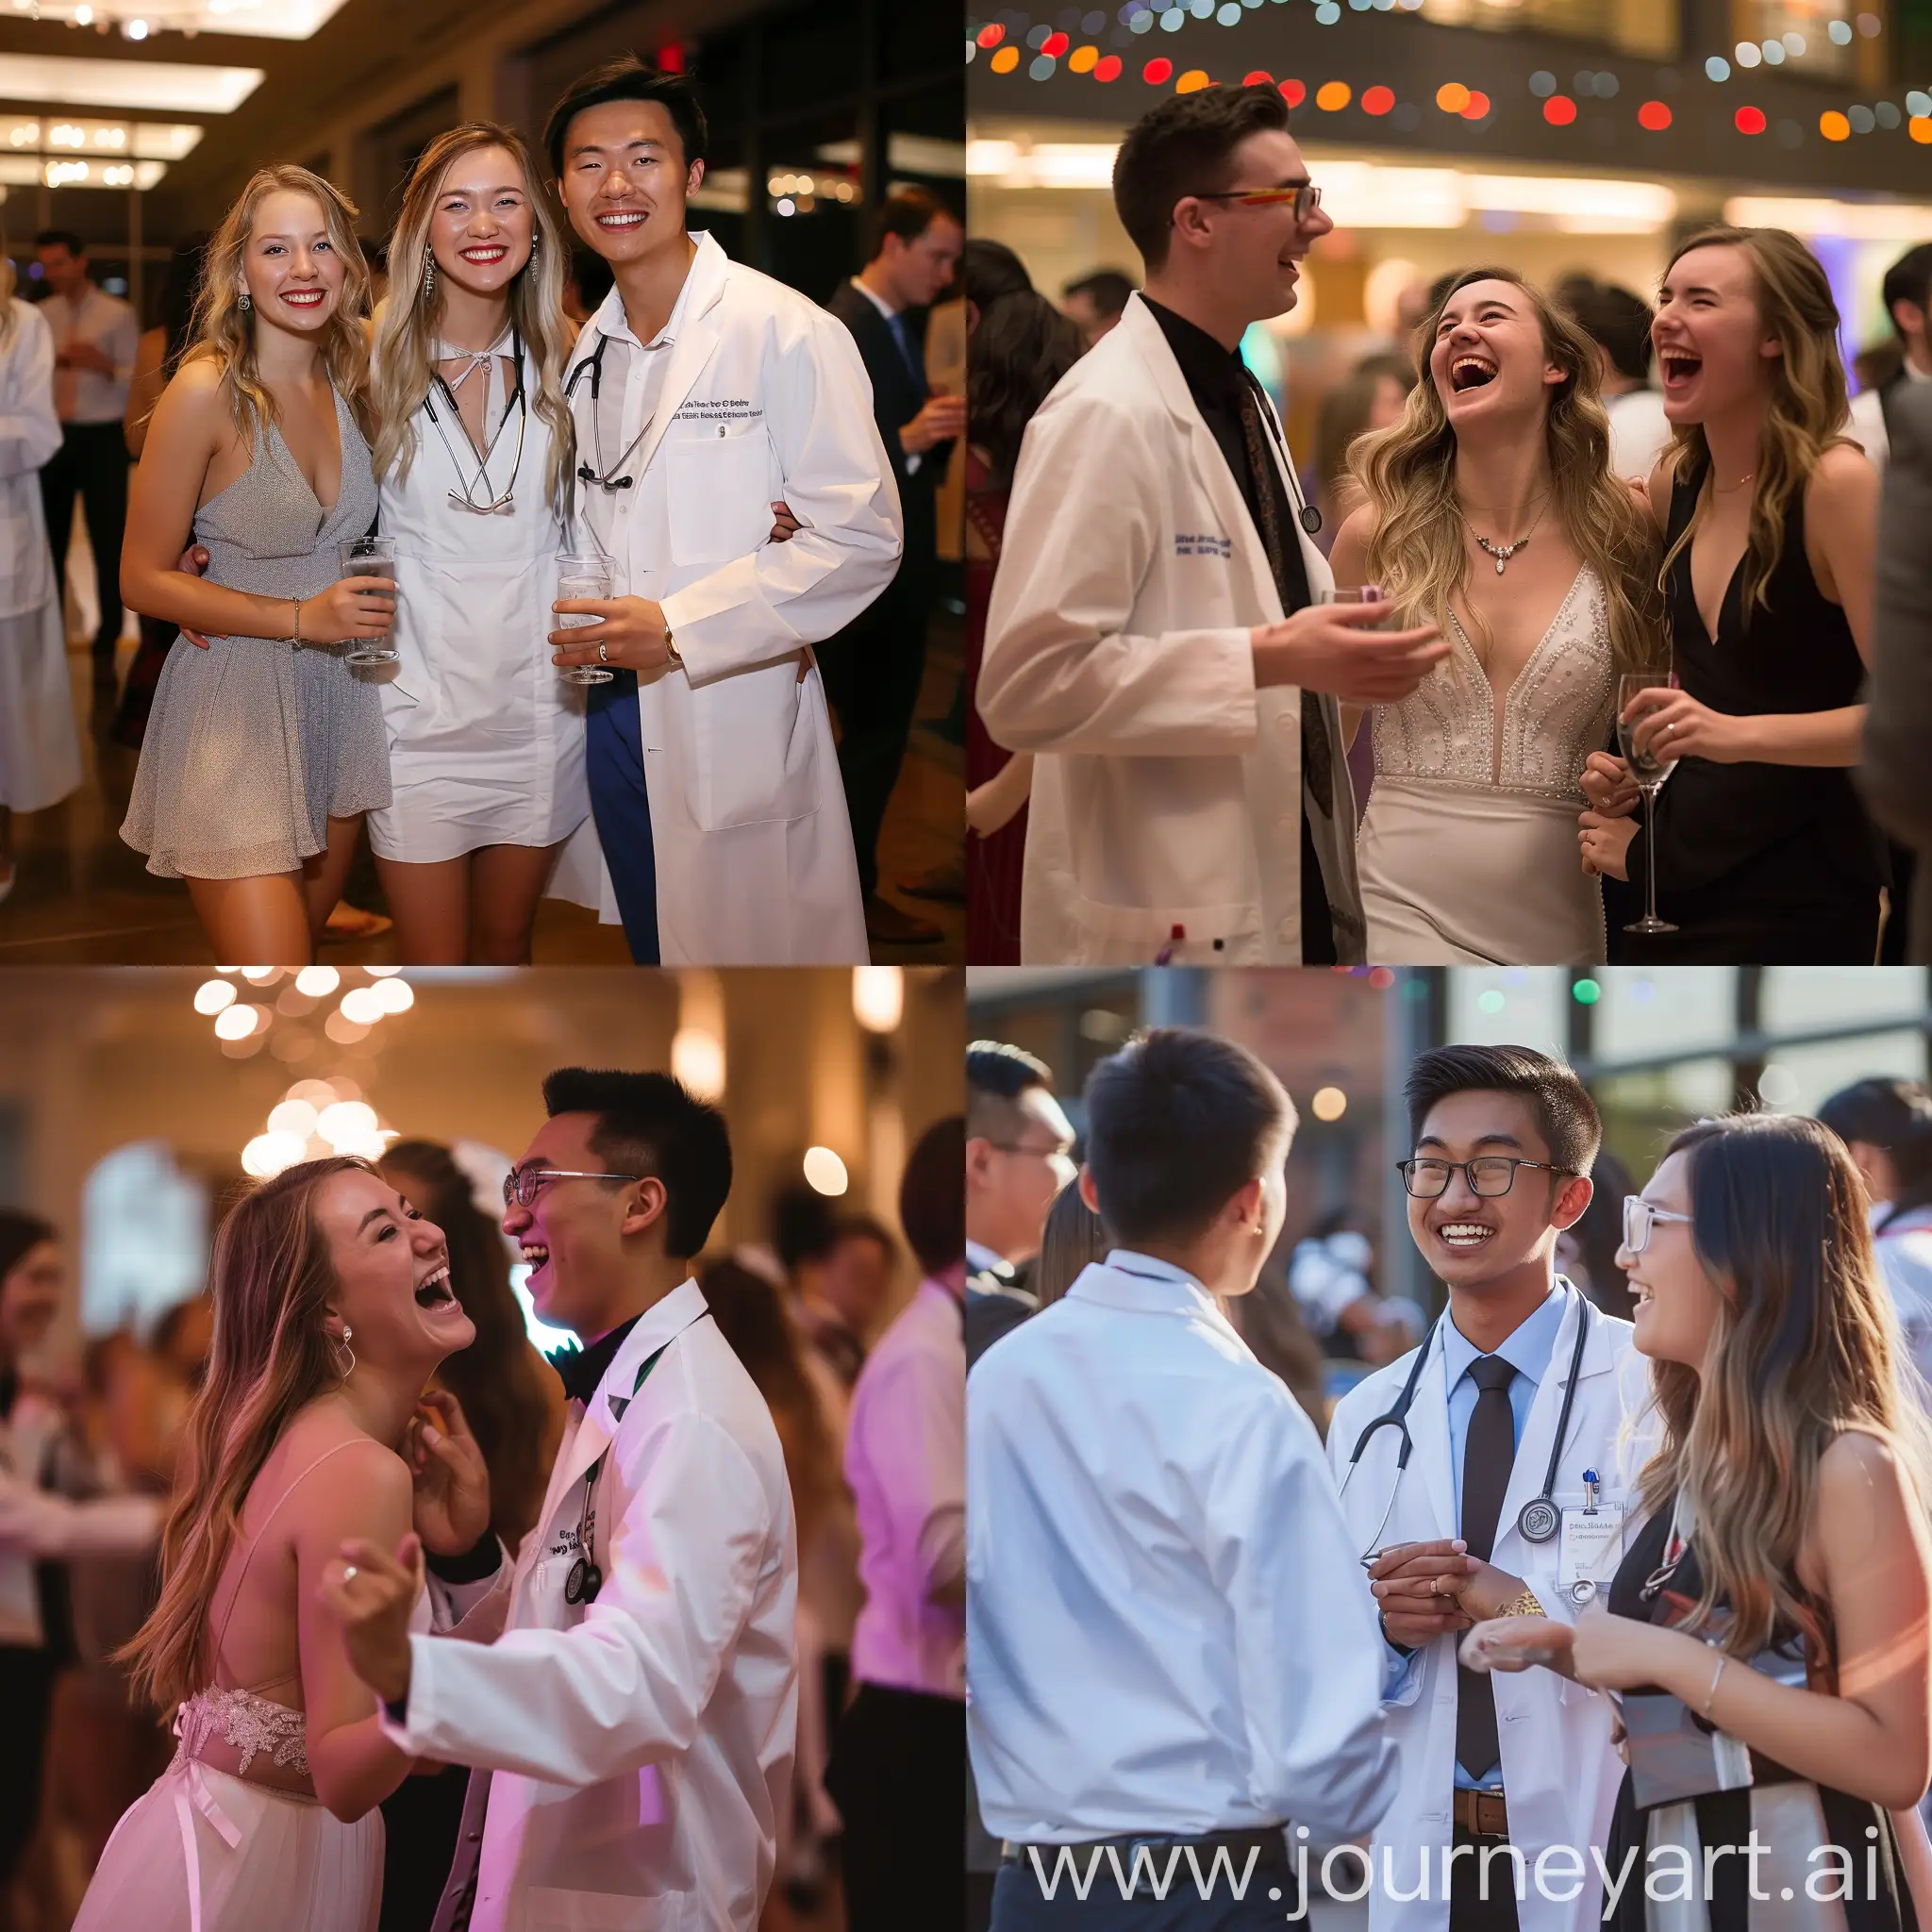 Joyful-Medical-Students-Celebrating-Prom-Night